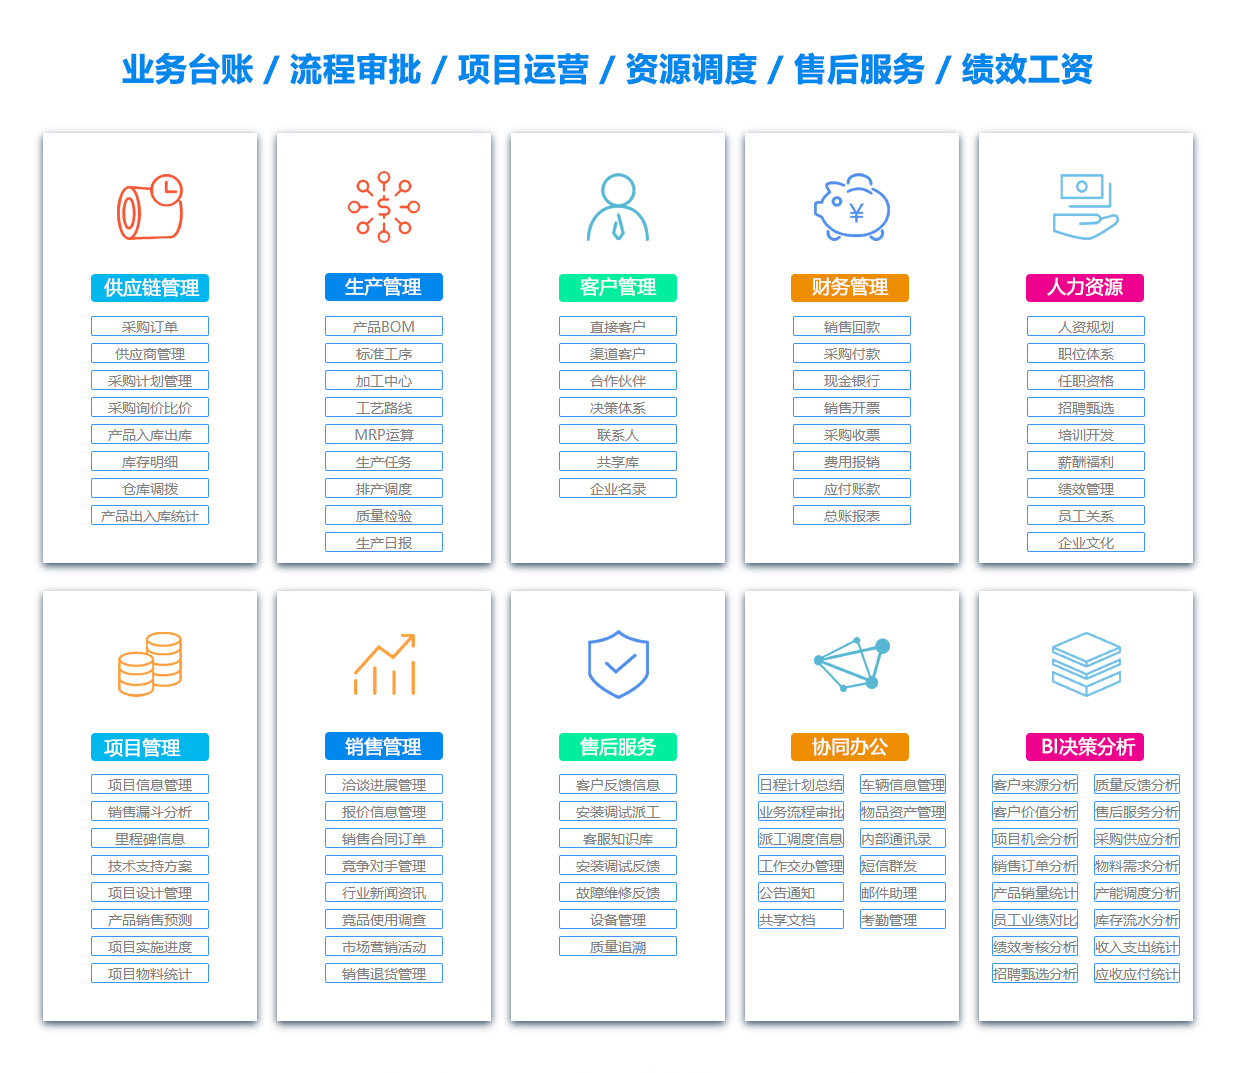 天津MIS:信息管理系统